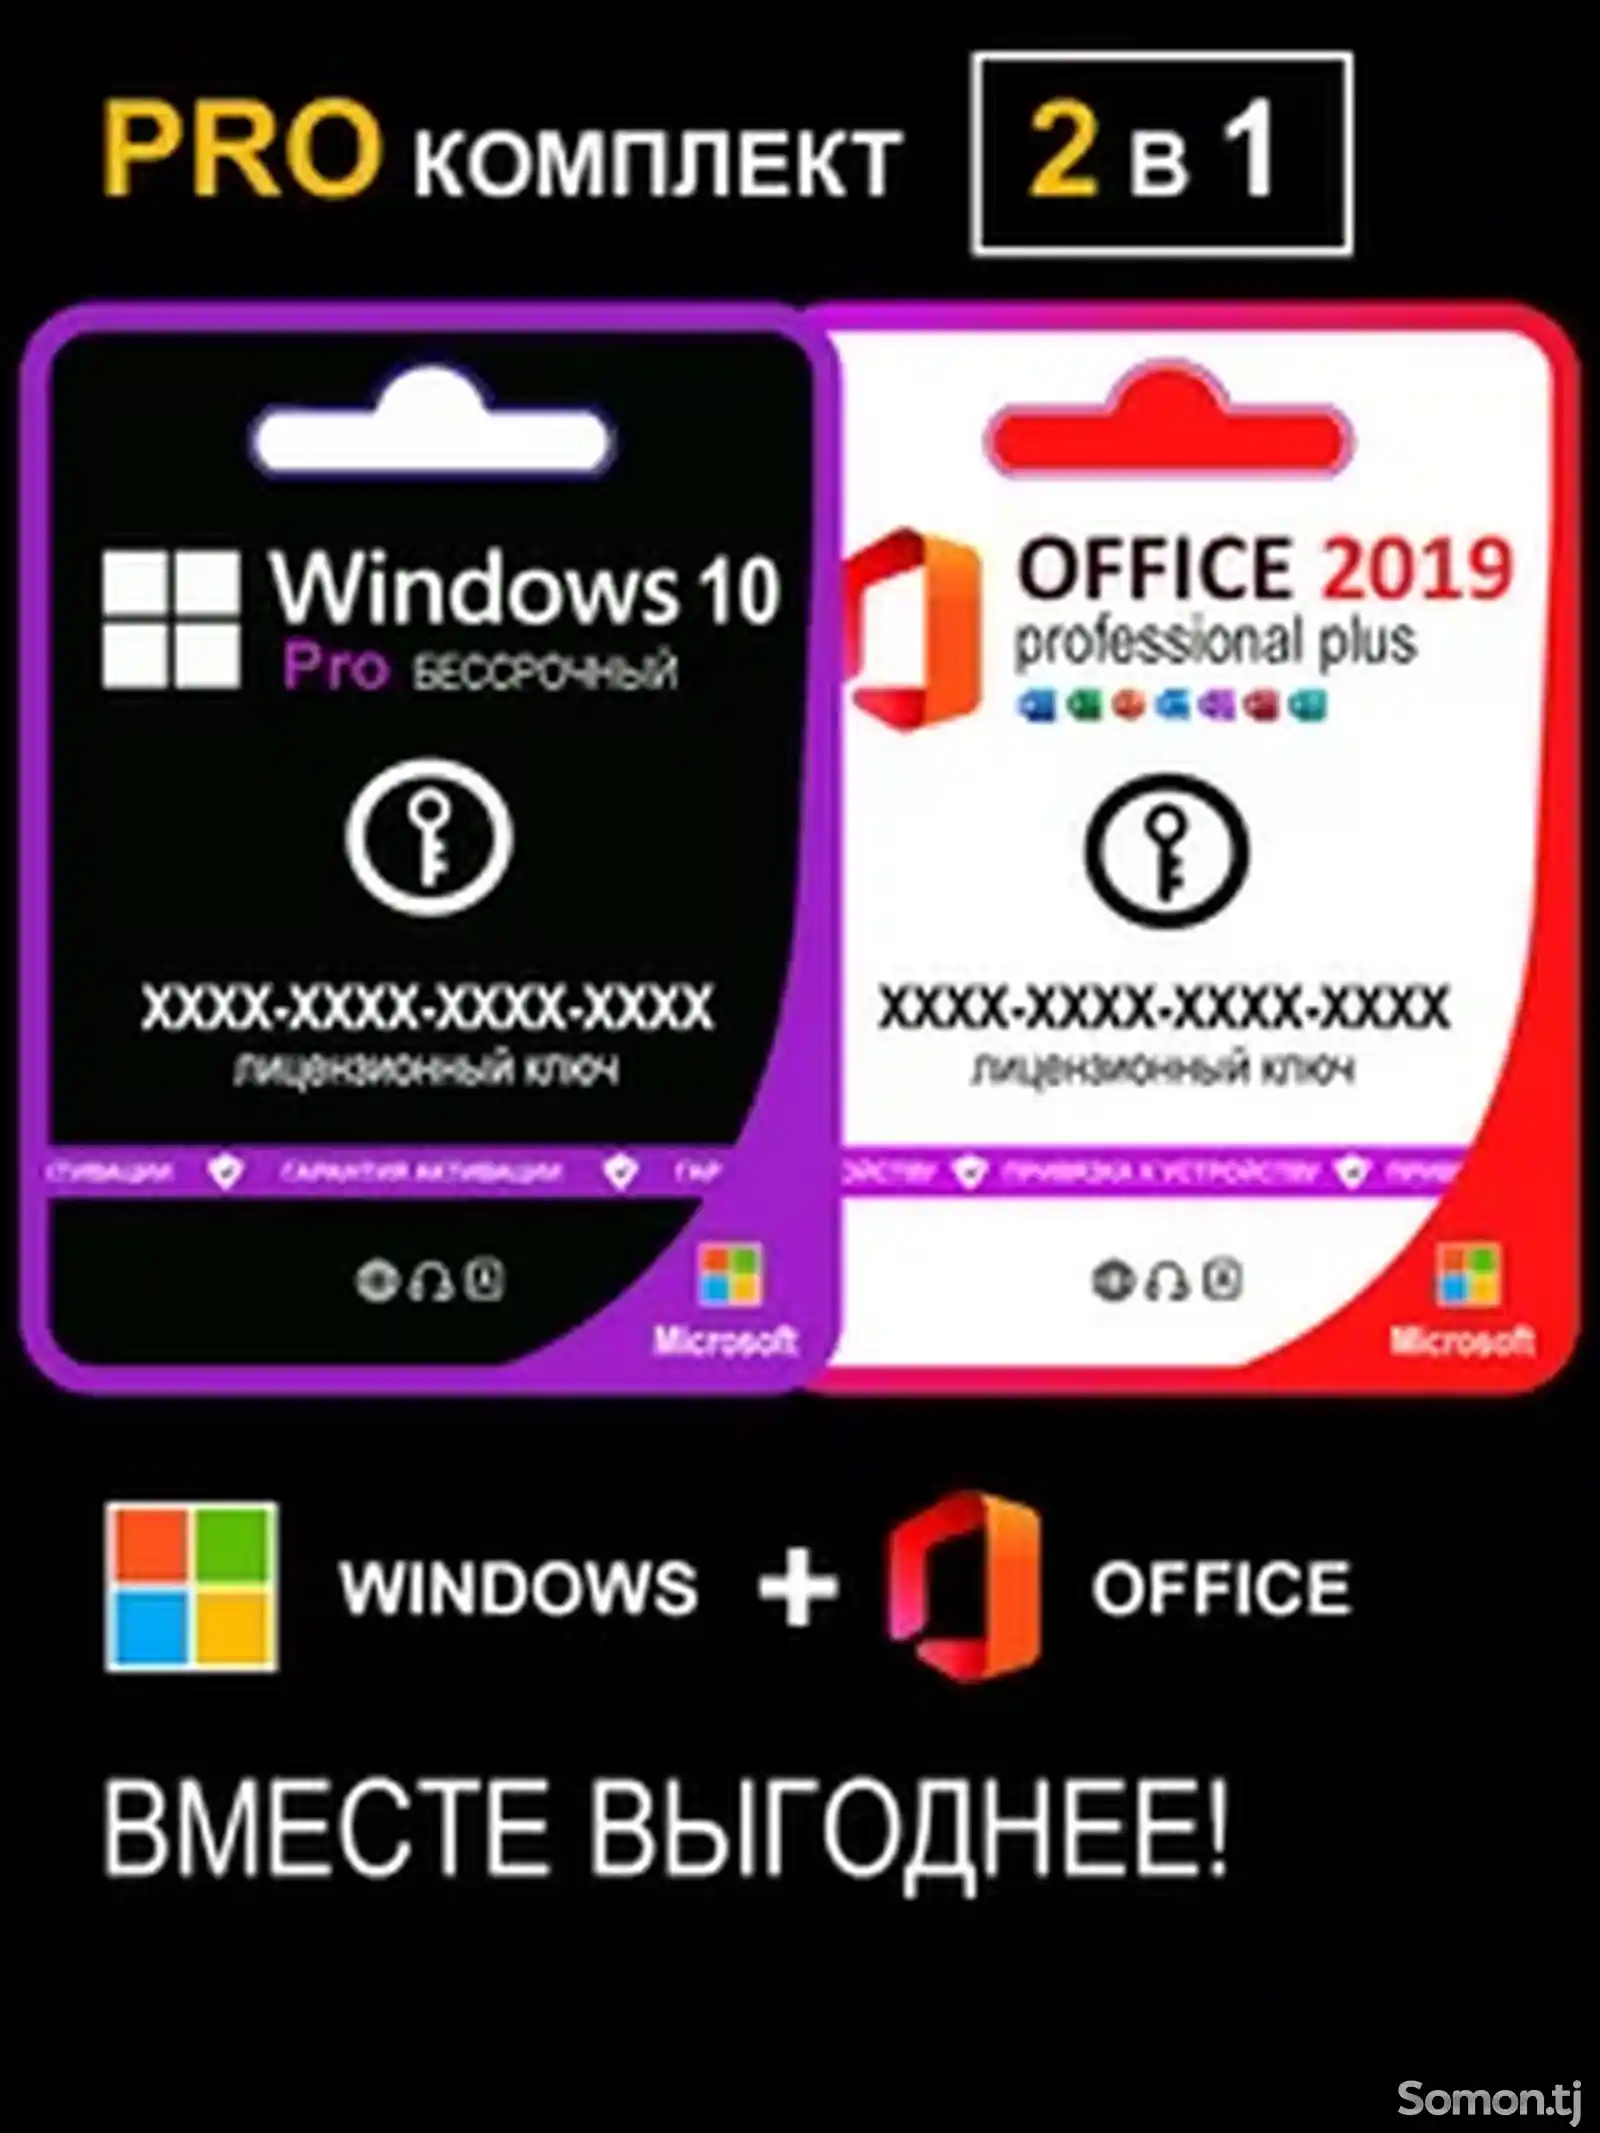 Комплект Windows 10 Pro и Office 2019 Pro Plus на 1 ПК